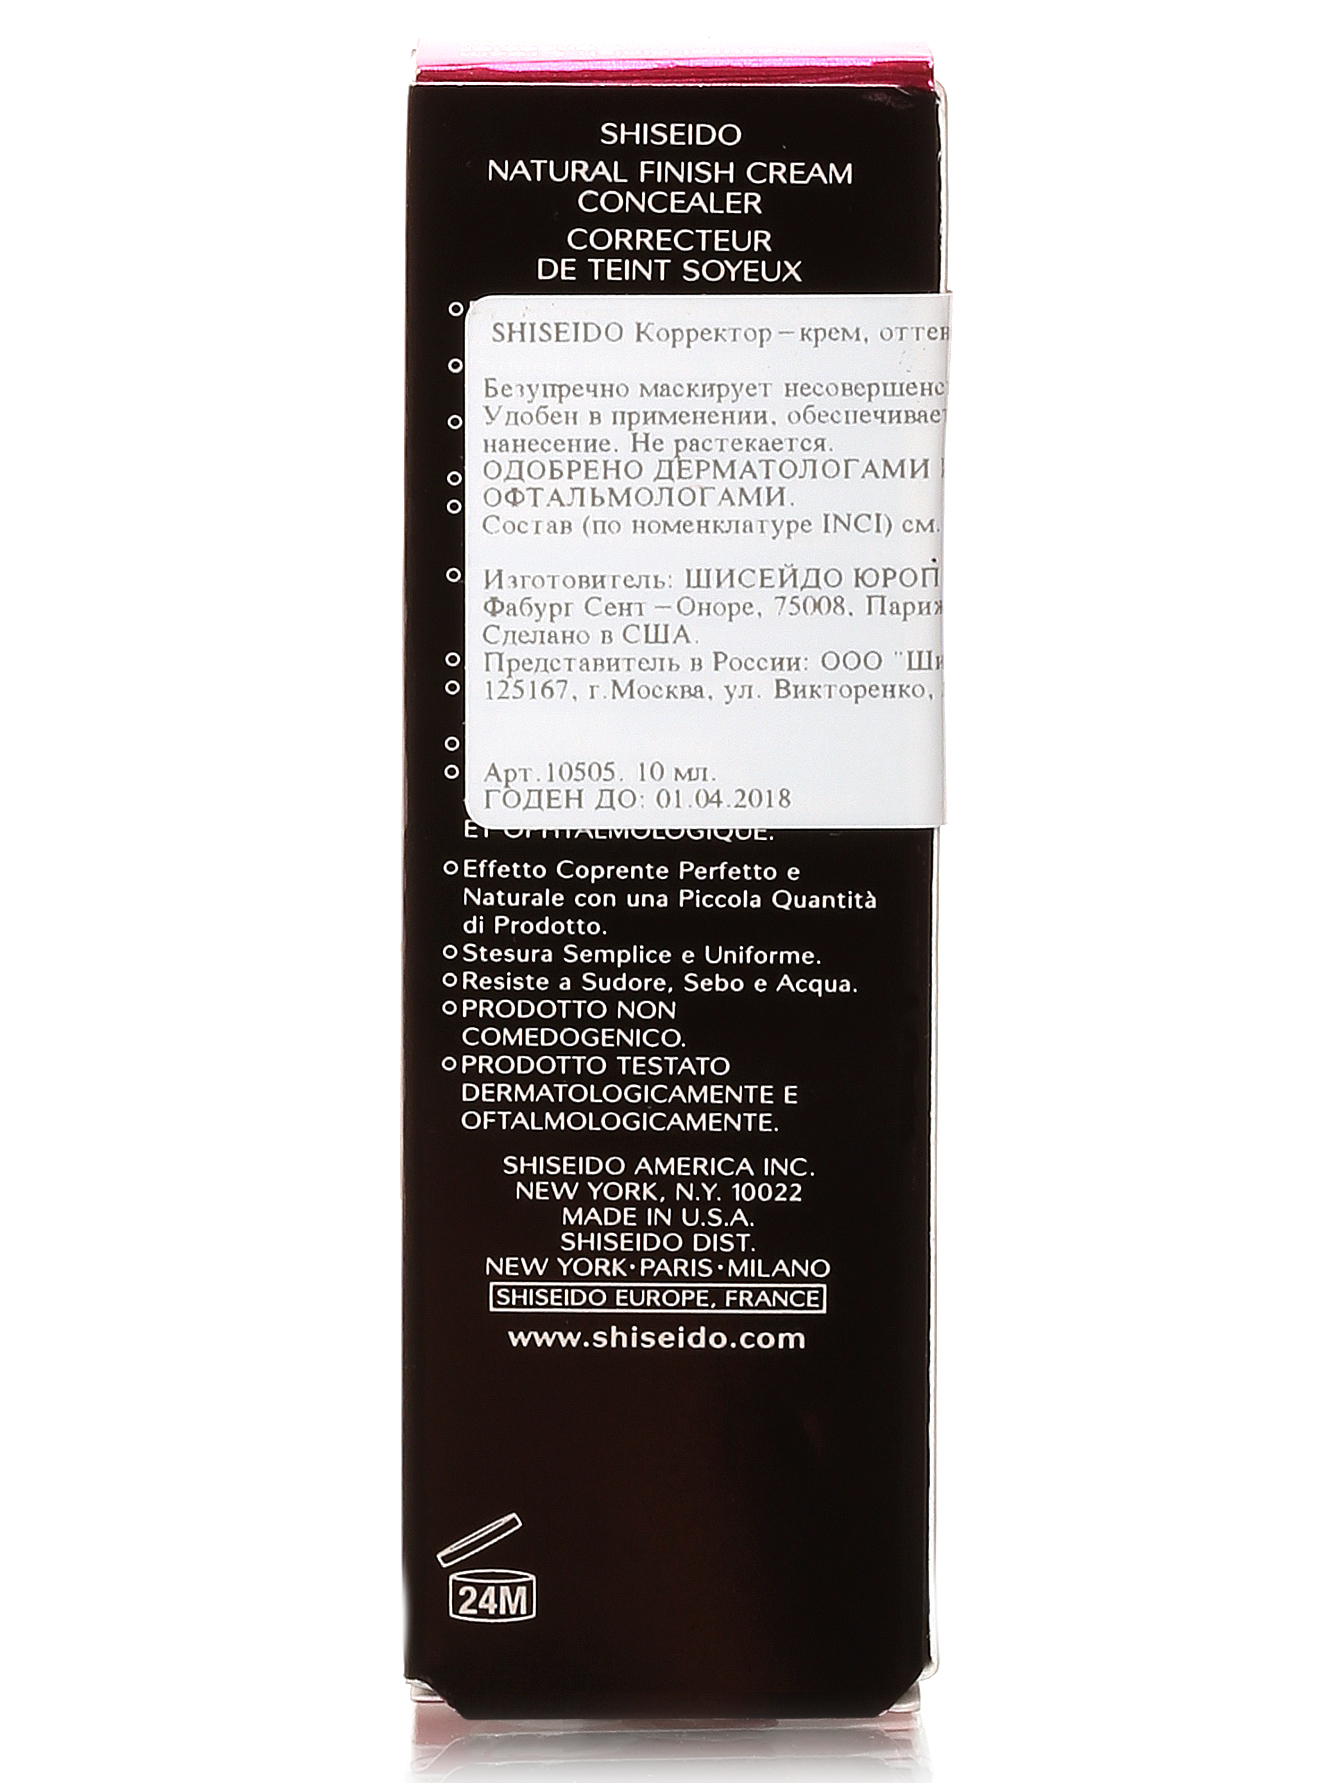 Корректор-крем - №3, Natural Finish Cream Concealer, 10ml - Модель Верх-Низ